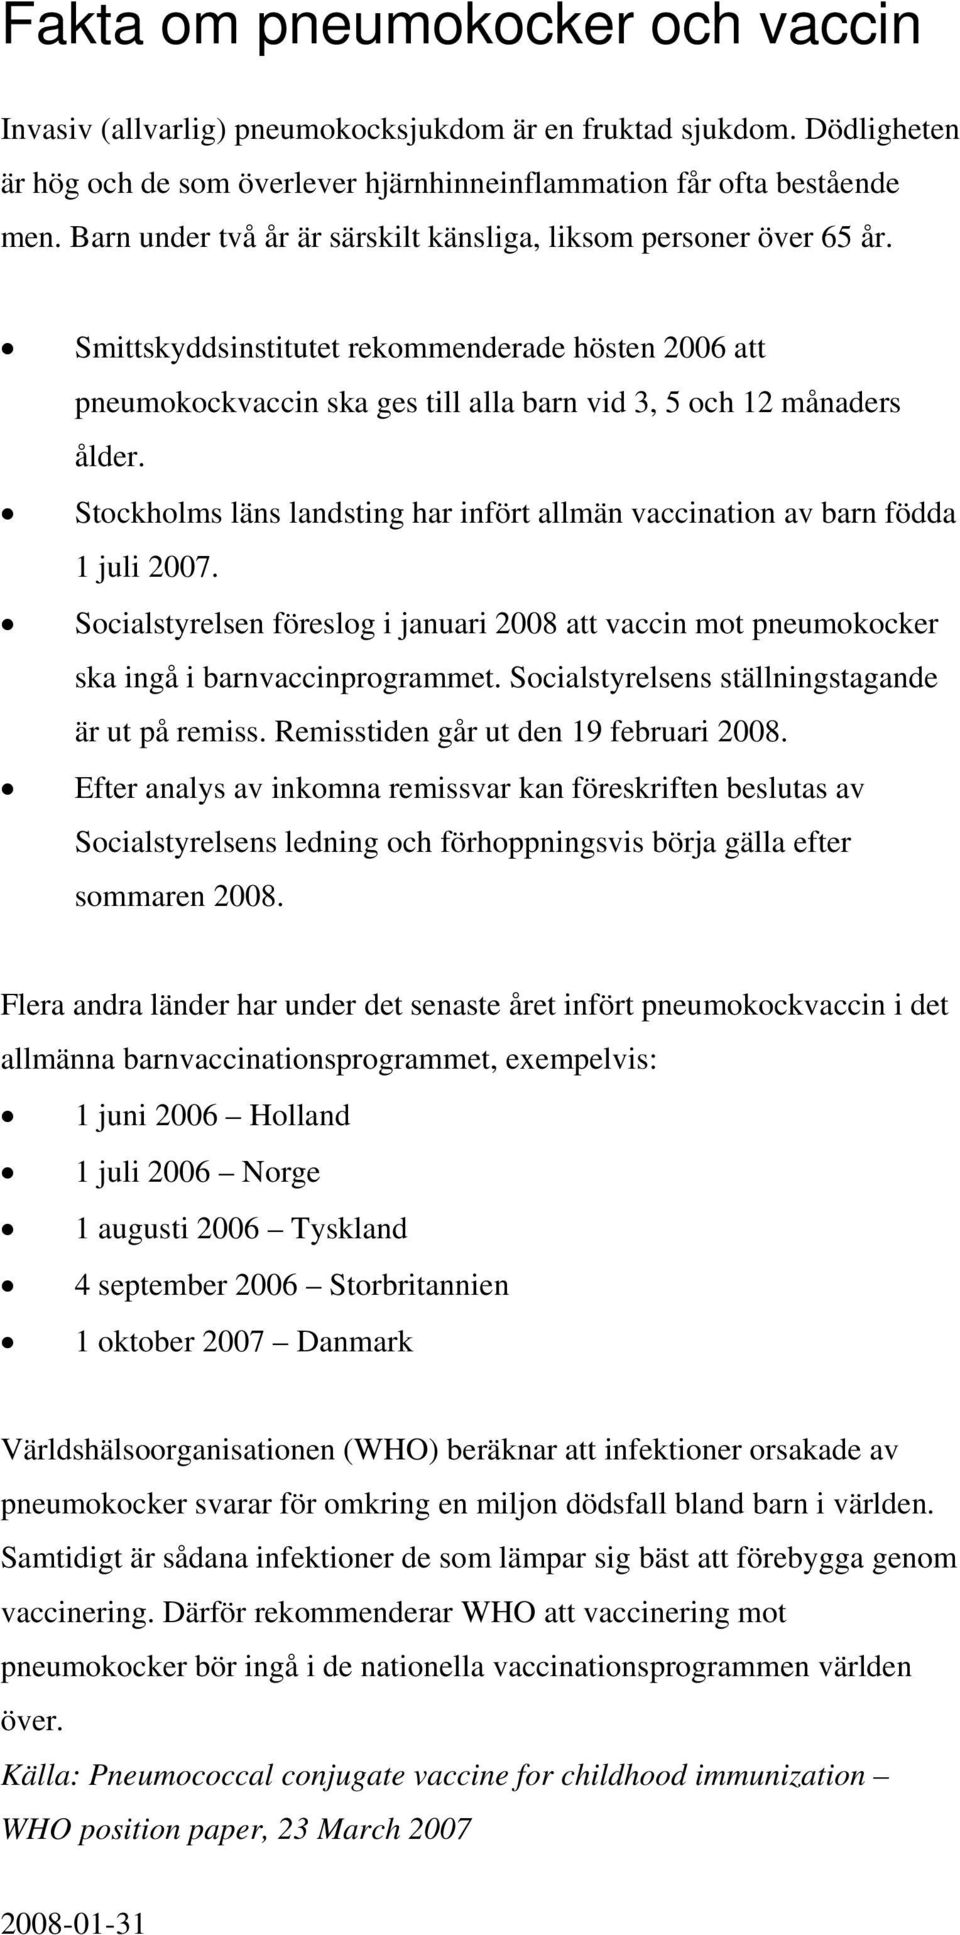 Stockholms läns landsting har infört allmän vaccination av barn födda 1 juli 2007. Socialstyrelsen föreslog i januari 2008 att vaccin mot pneumokocker ska ingå i barnvaccinprogrammet.